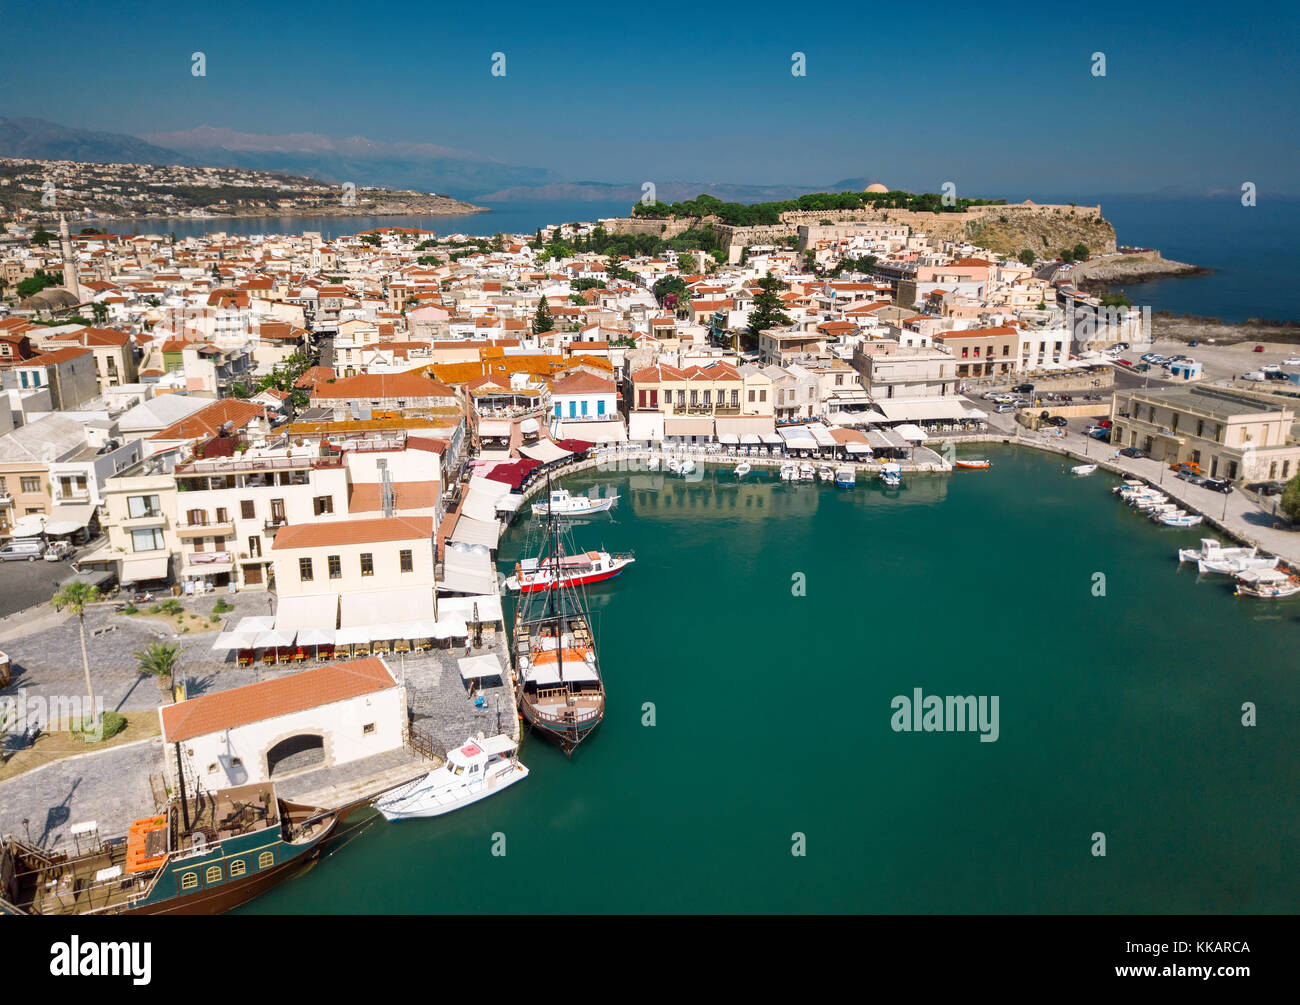 Vista aérea del casco antiguo de Rethymno, puerto veneciano y la fortaleza, en la isla de Creta, las islas griegas, Grecia, Europa Foto de stock